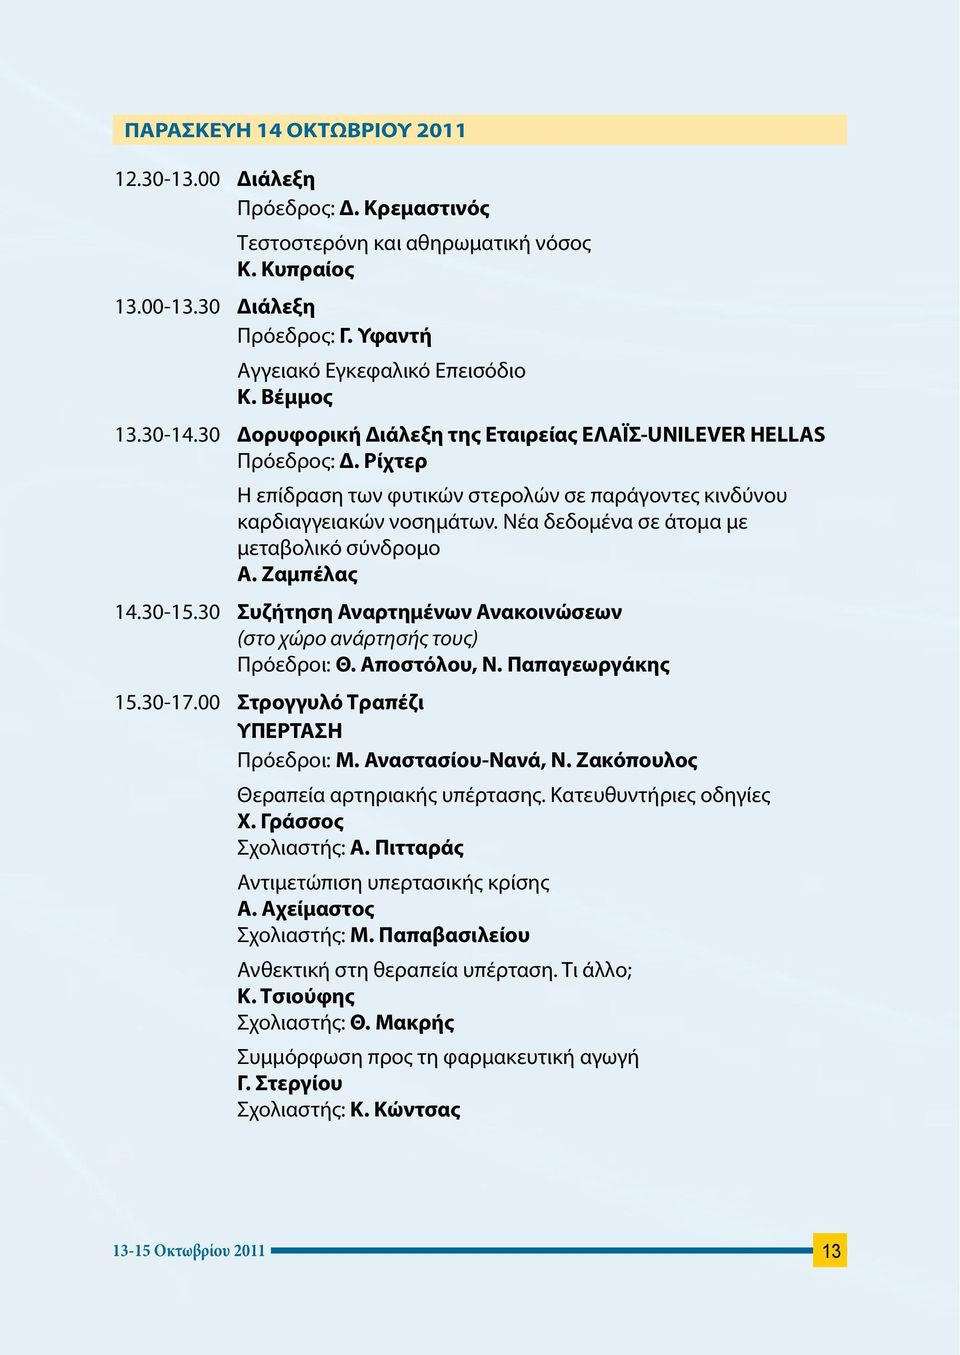 Νέα δεδομένα σε άτομα με μεταβολικό σύνδρομο Α. Ζαμπέλας 4.30-5.30 Συζήτηση Αναρτημένων Ανακοινώσεων (στο χώρο ανάρτησής τους) Πρόεδροι: Θ. Αποστόλου, Ν. Παπαγεωργάκης 5.30-7.